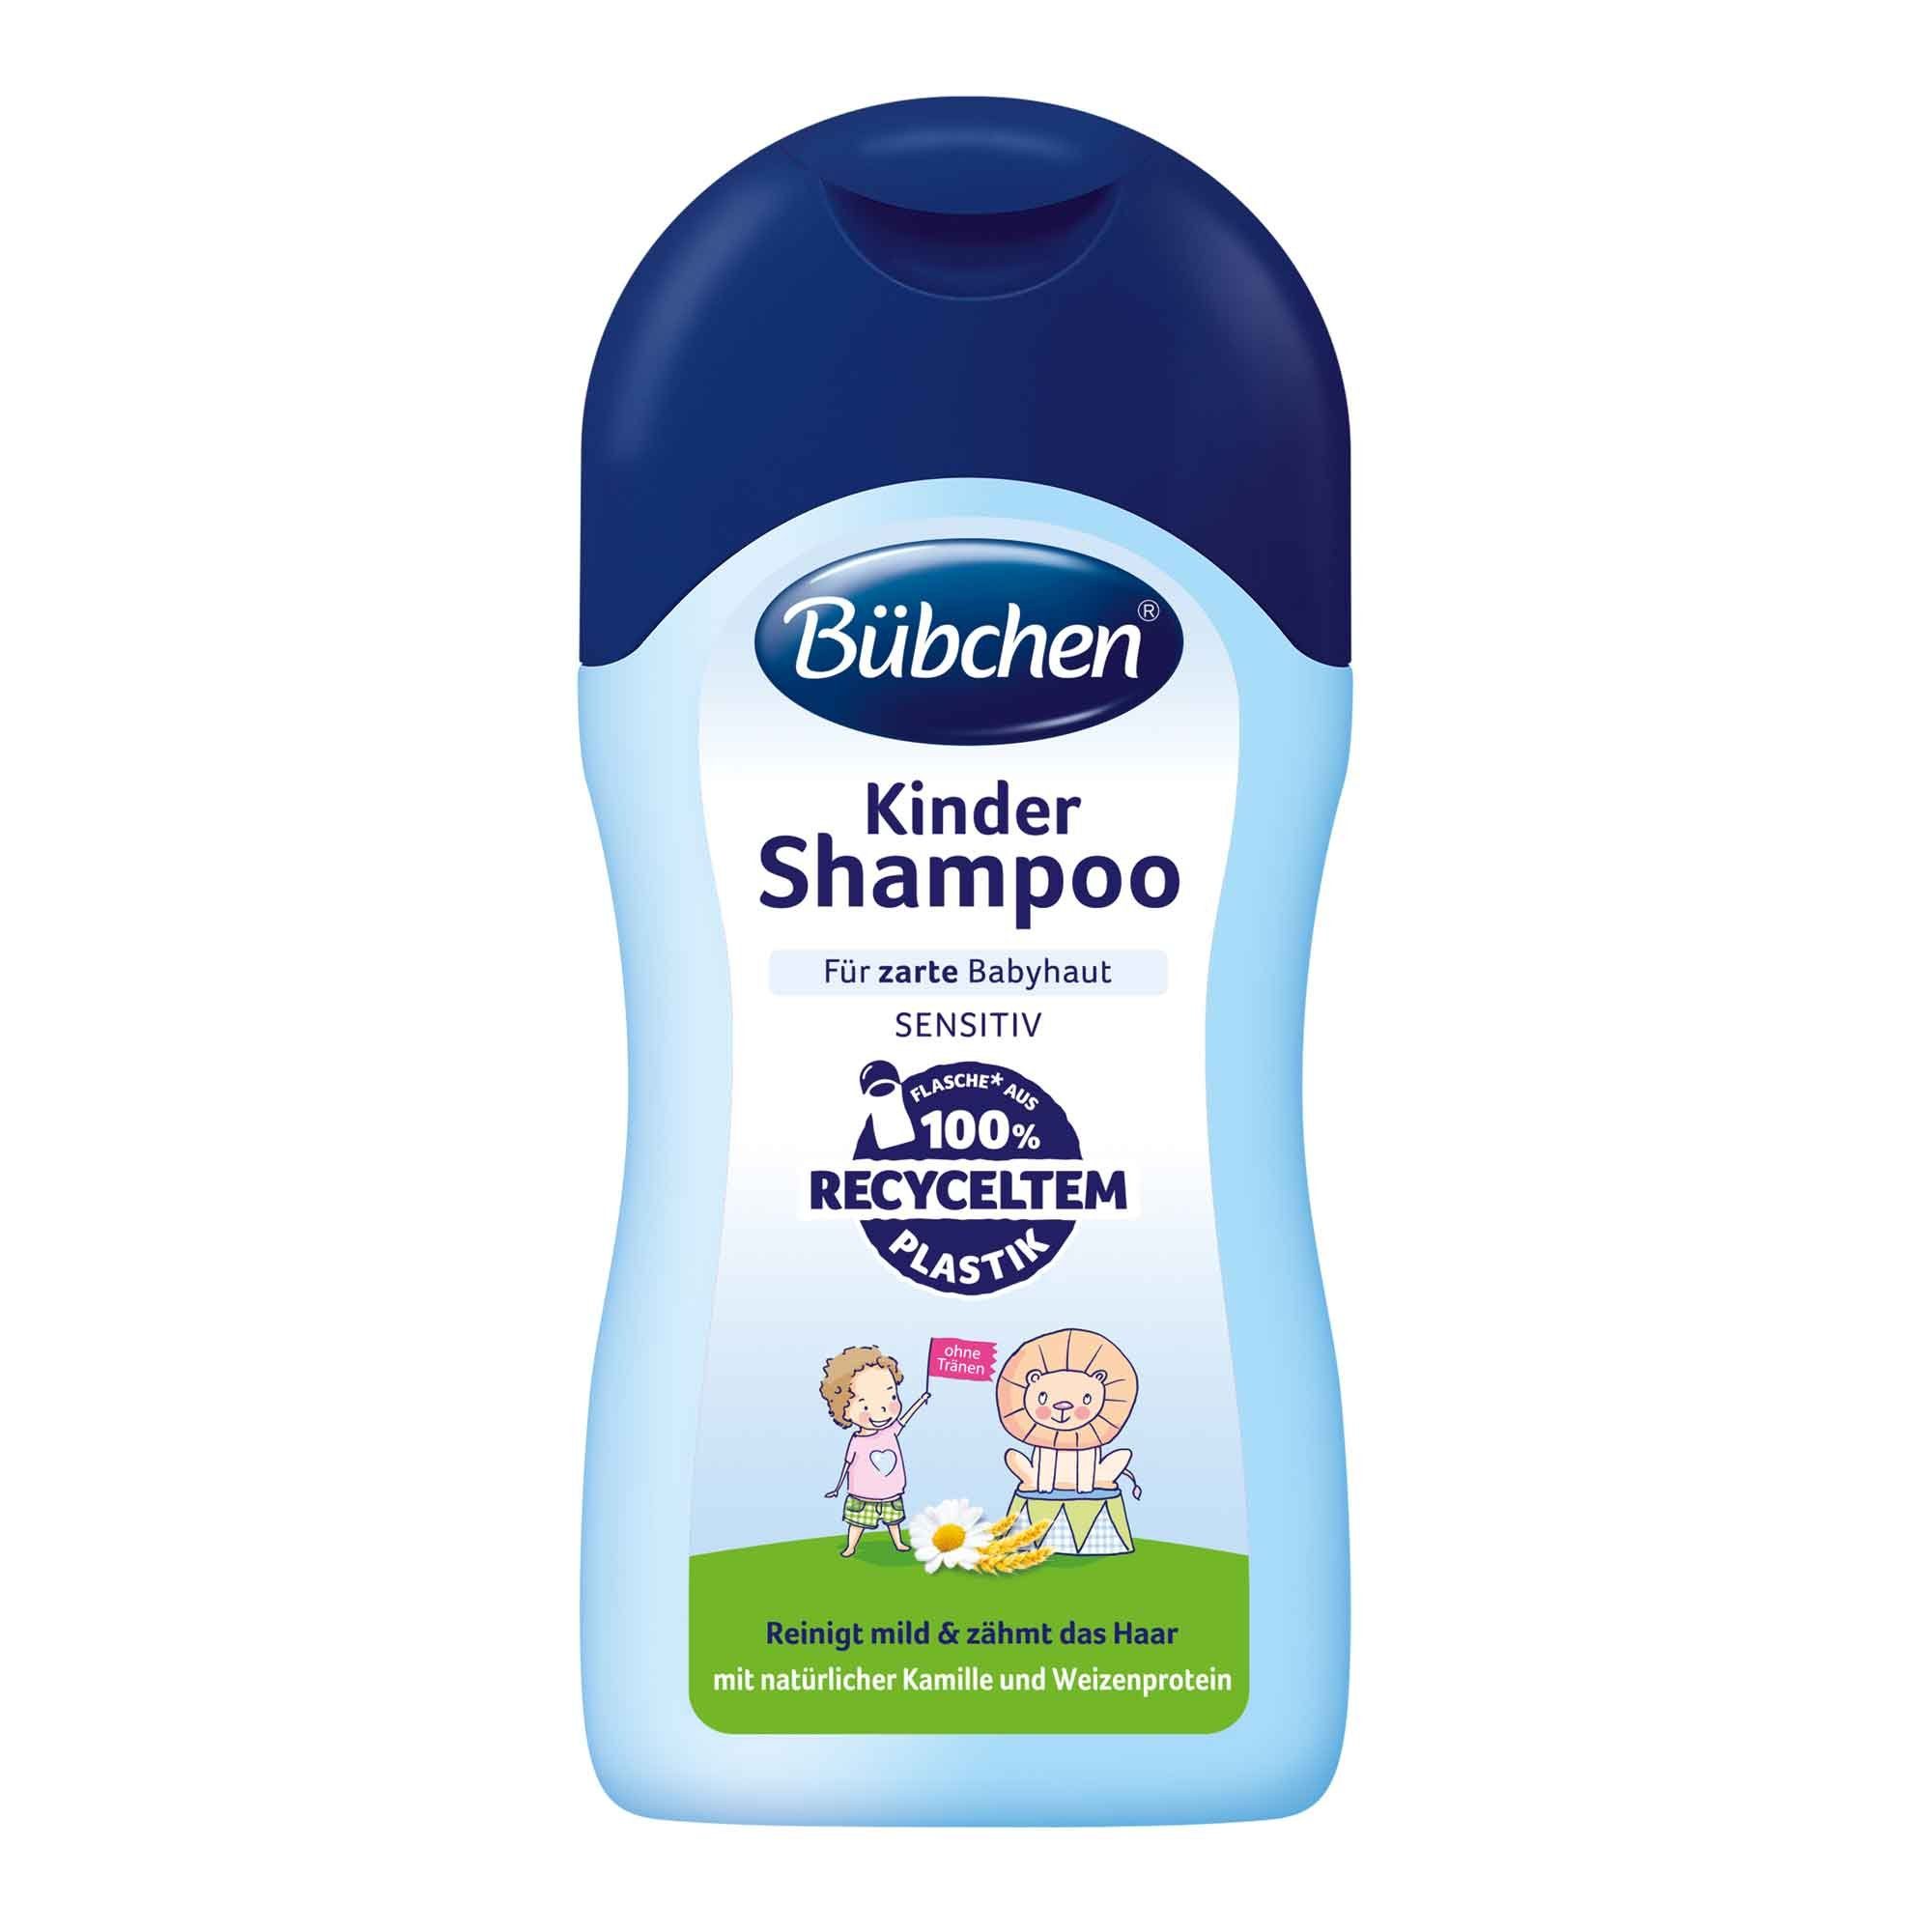 BÜBCHEN Haarshampoo Bübchen Kinder Shampoo 400ml